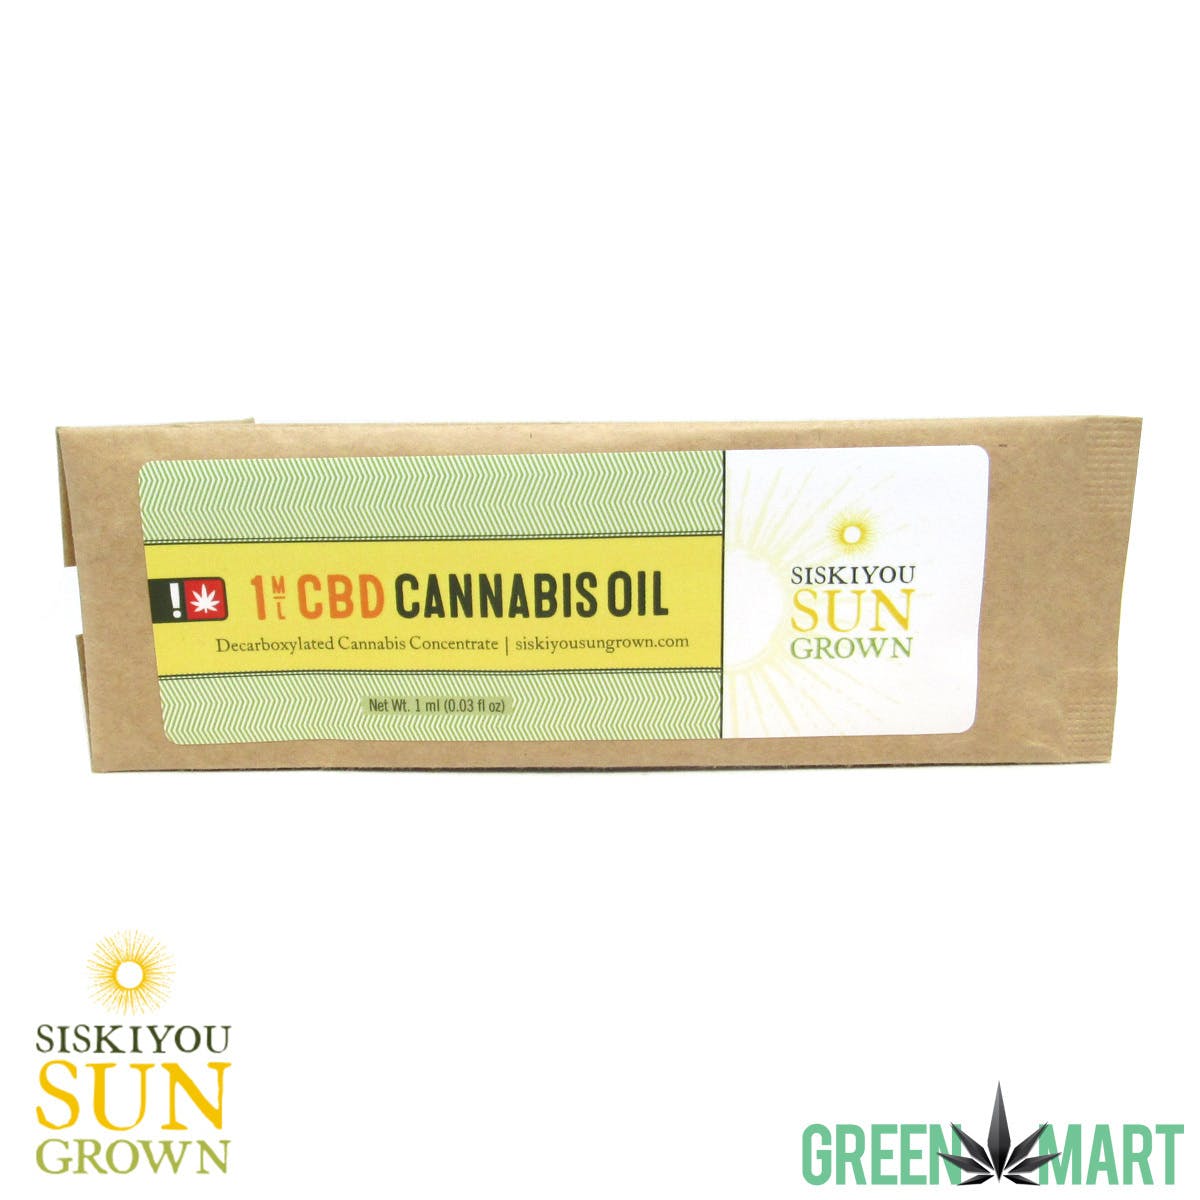 Siskiyou Sun Grown - CBD Cannabis Oil